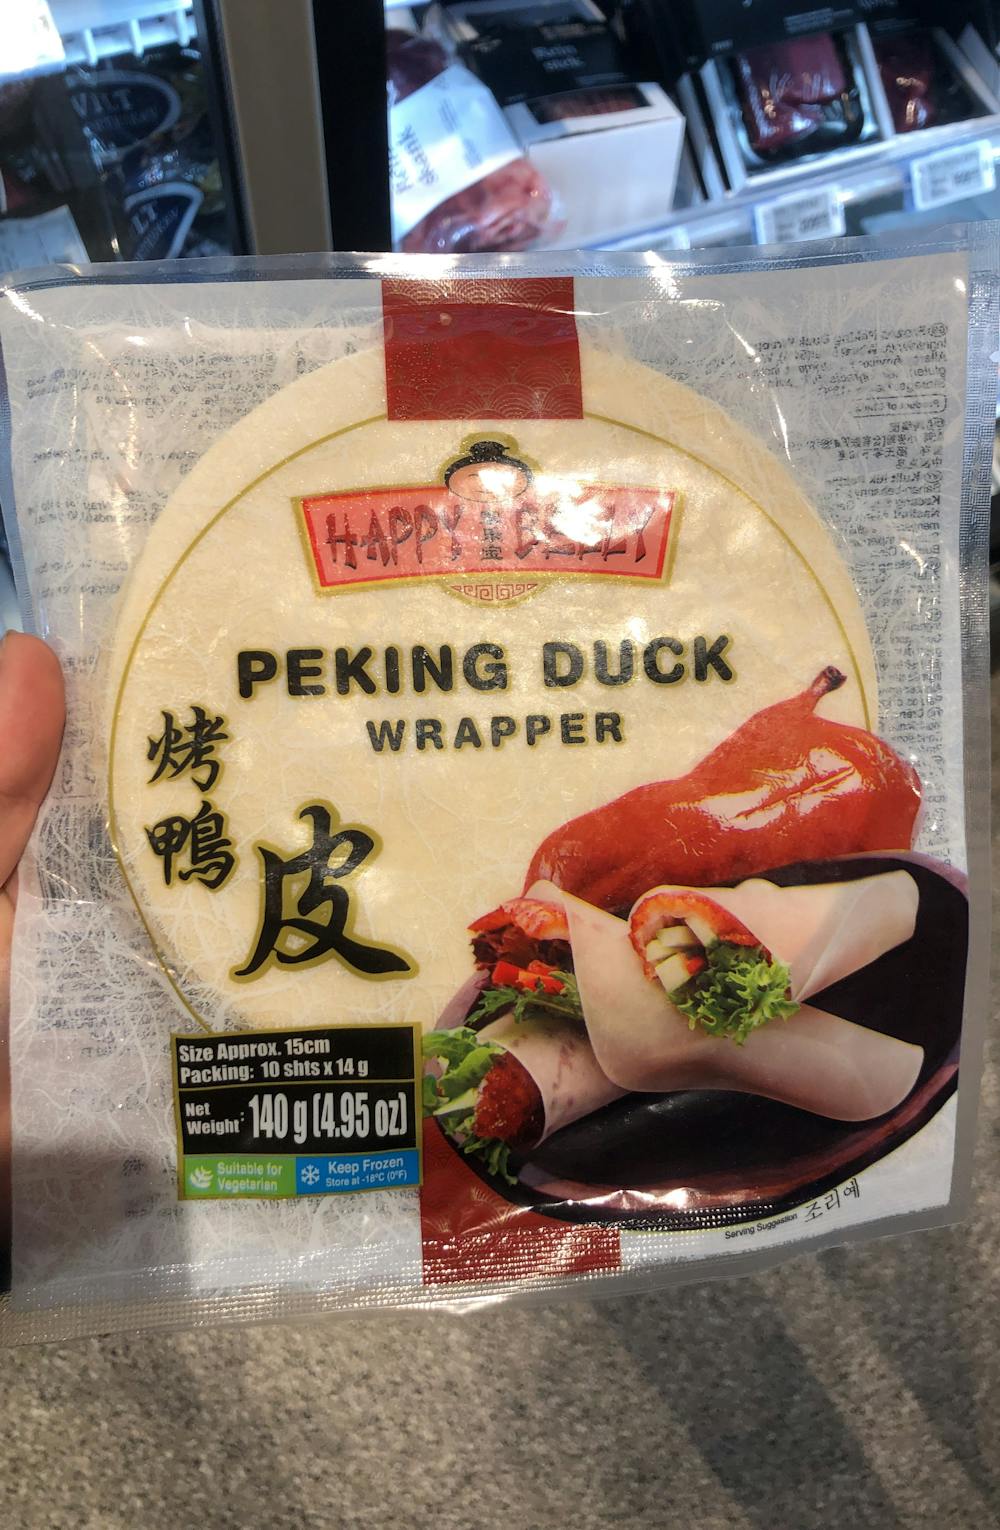 Peking duck wrapper, Happy belly